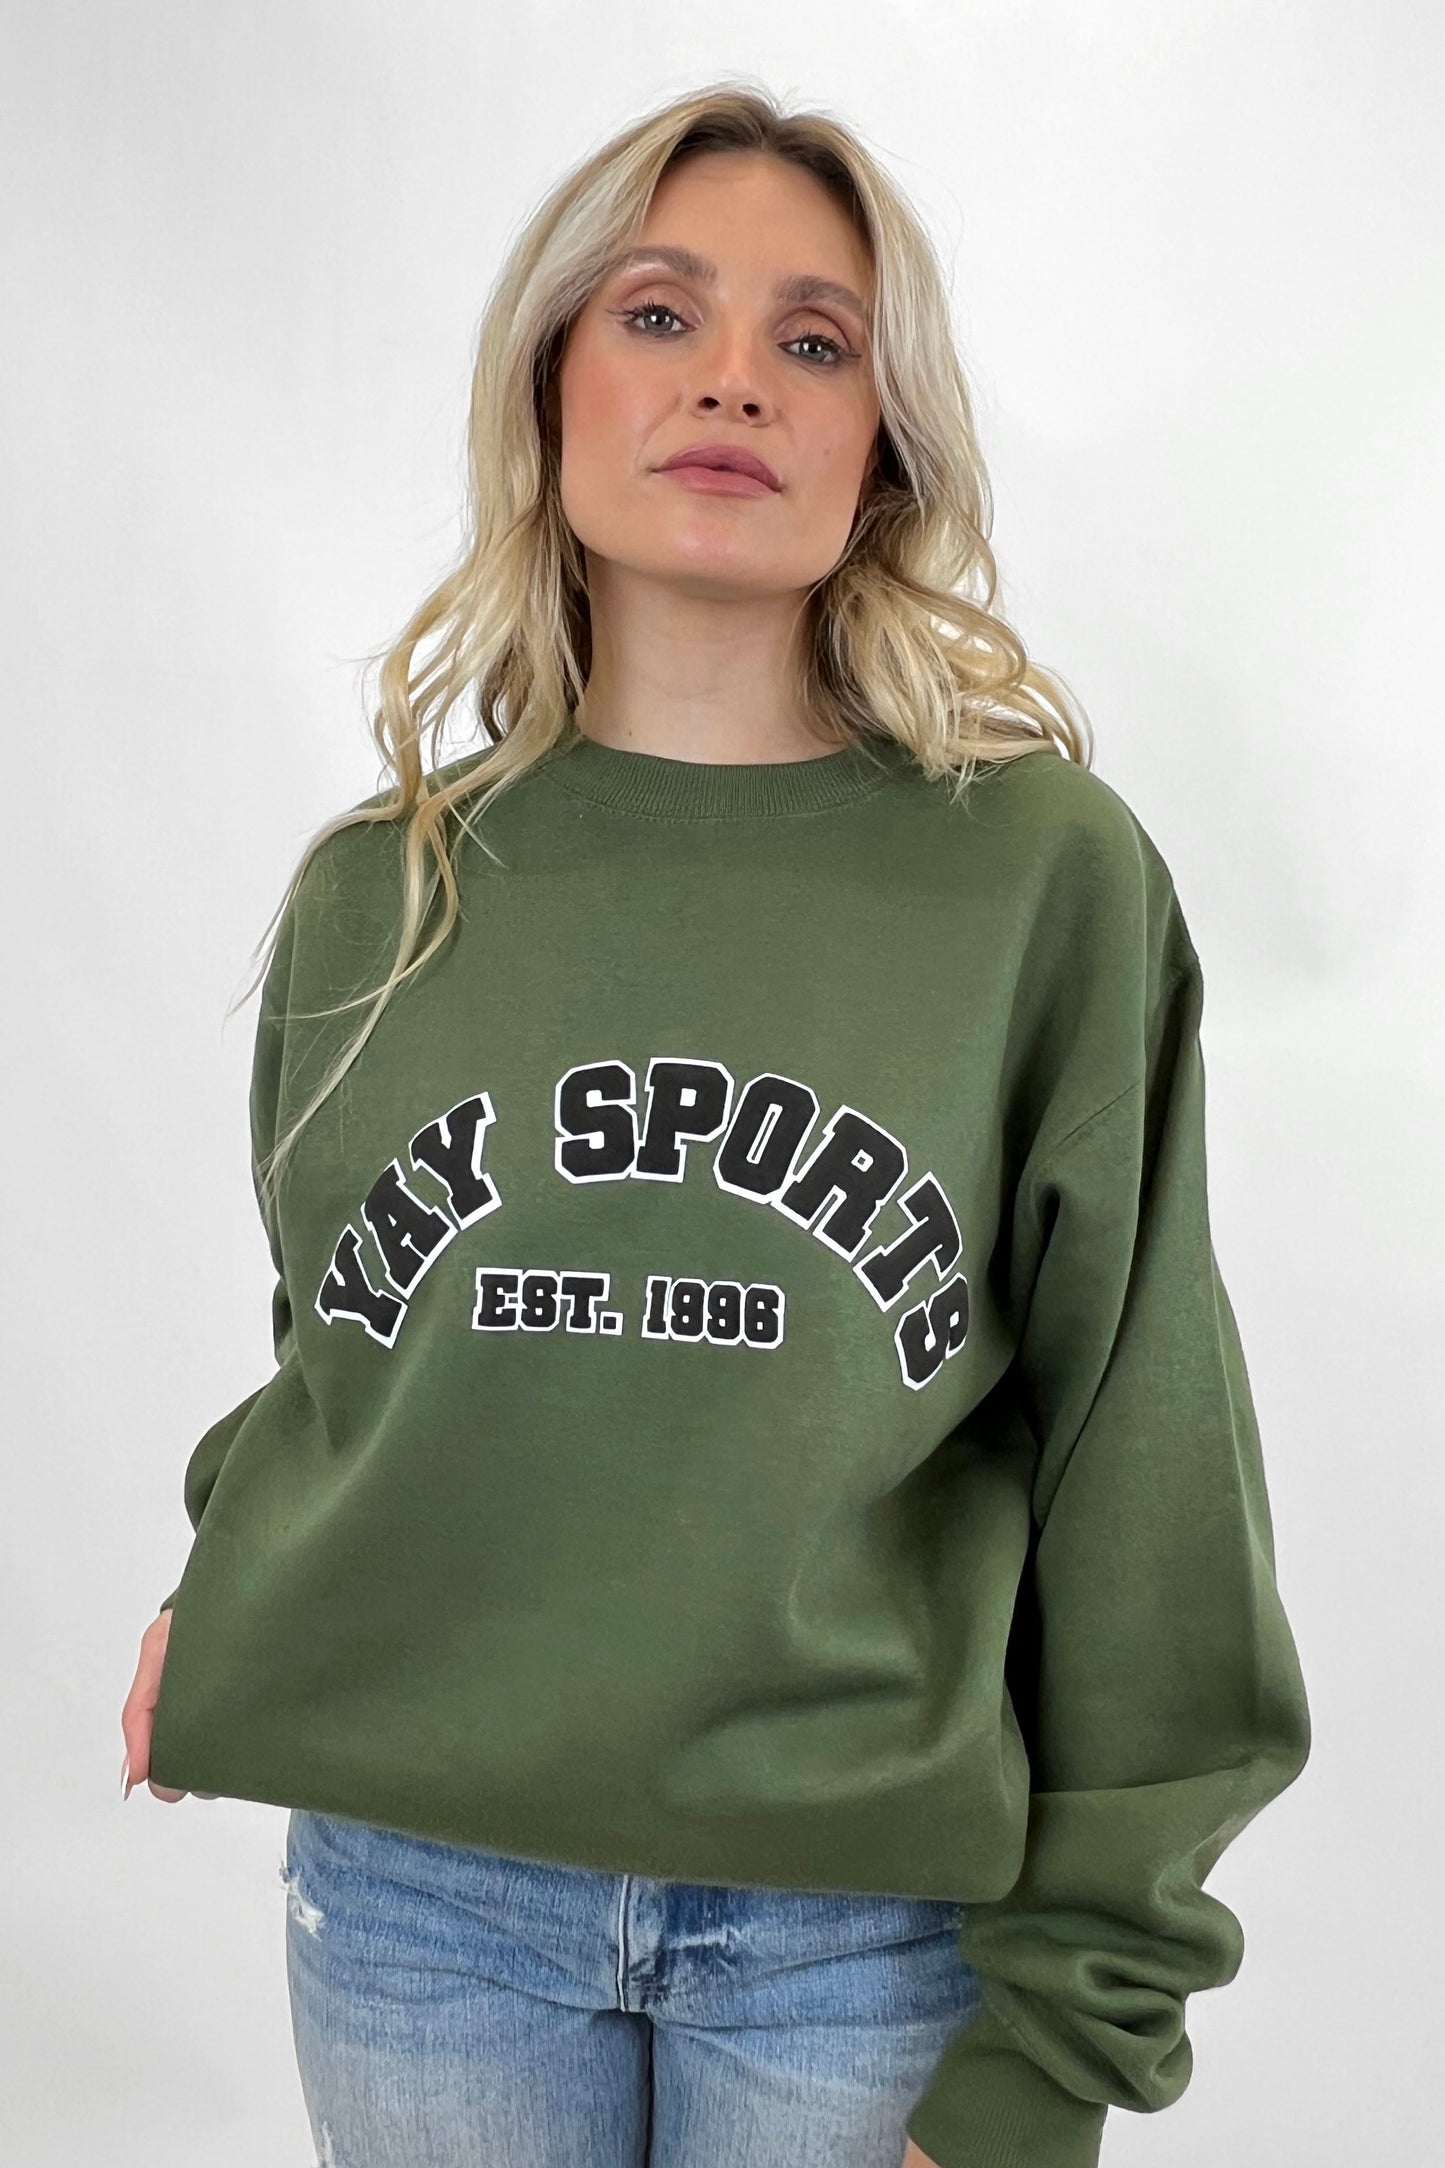 Yay Sports Est 1996 Puff Print Sweatshirt SWEATSHIRT LULUSIMONSTUDIO 